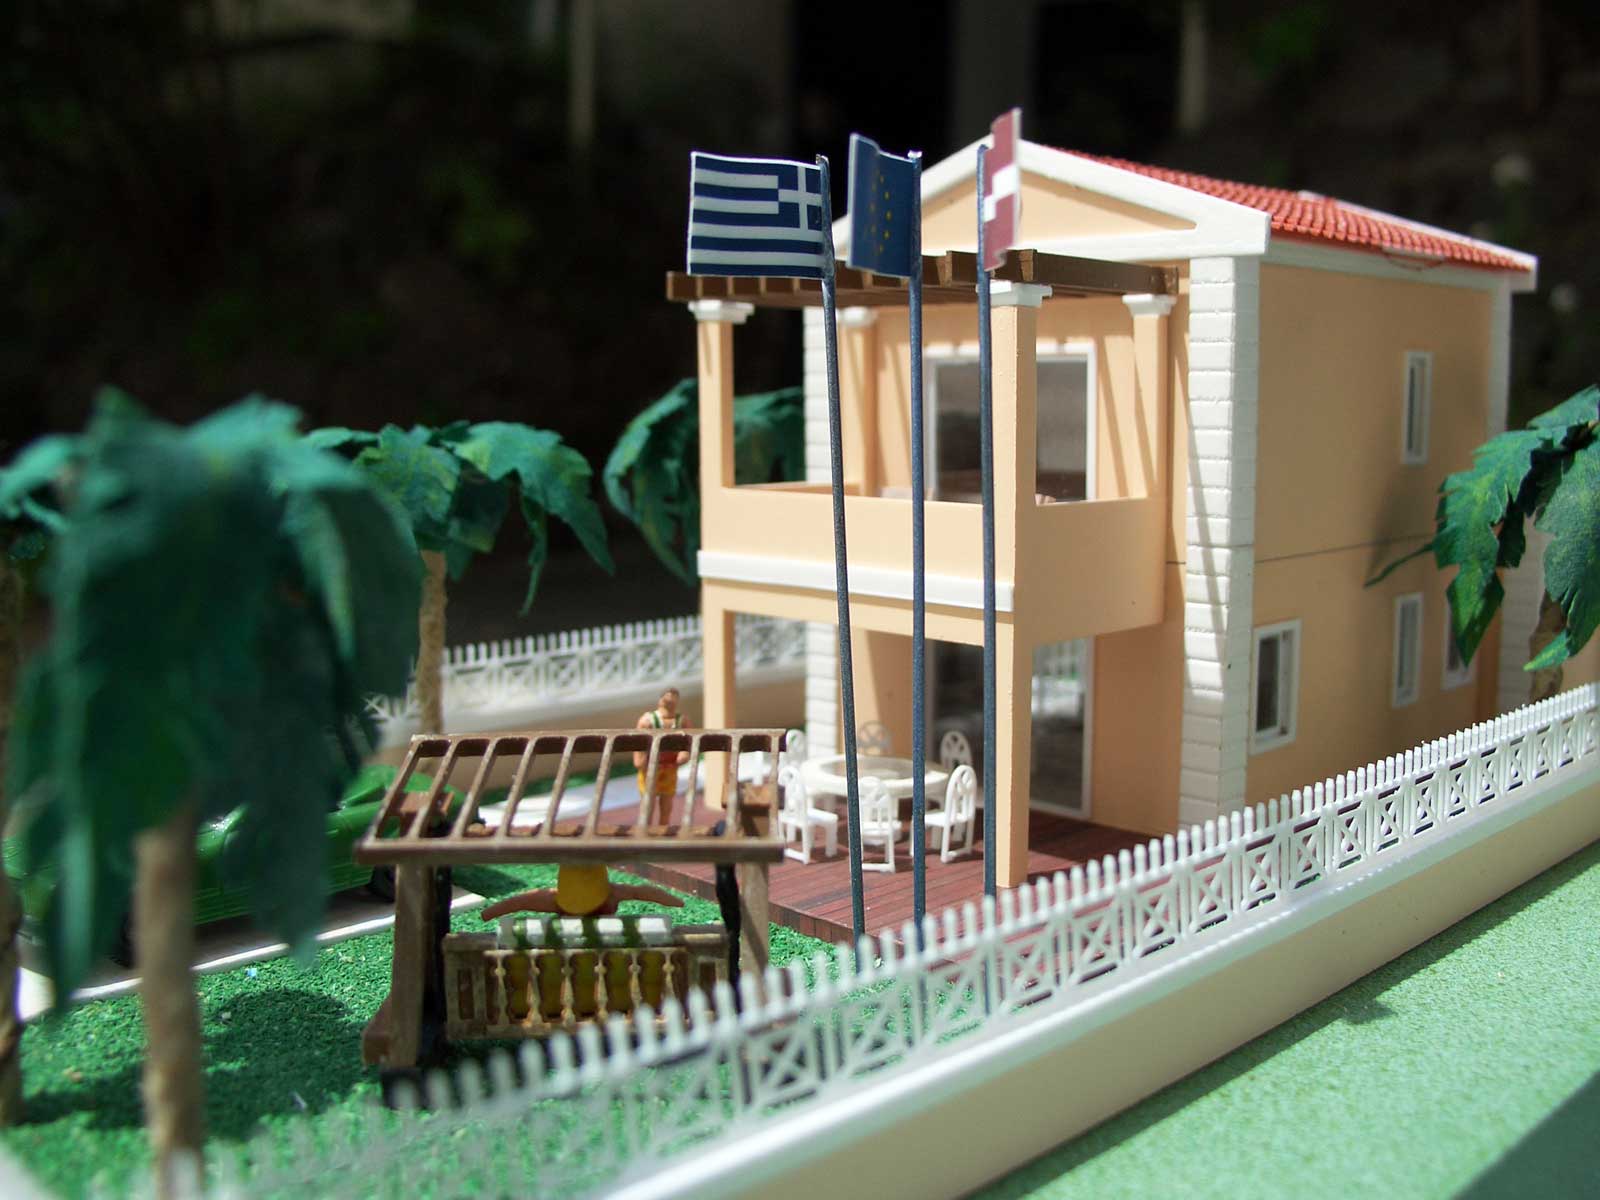 Частный дом на острове Крит.